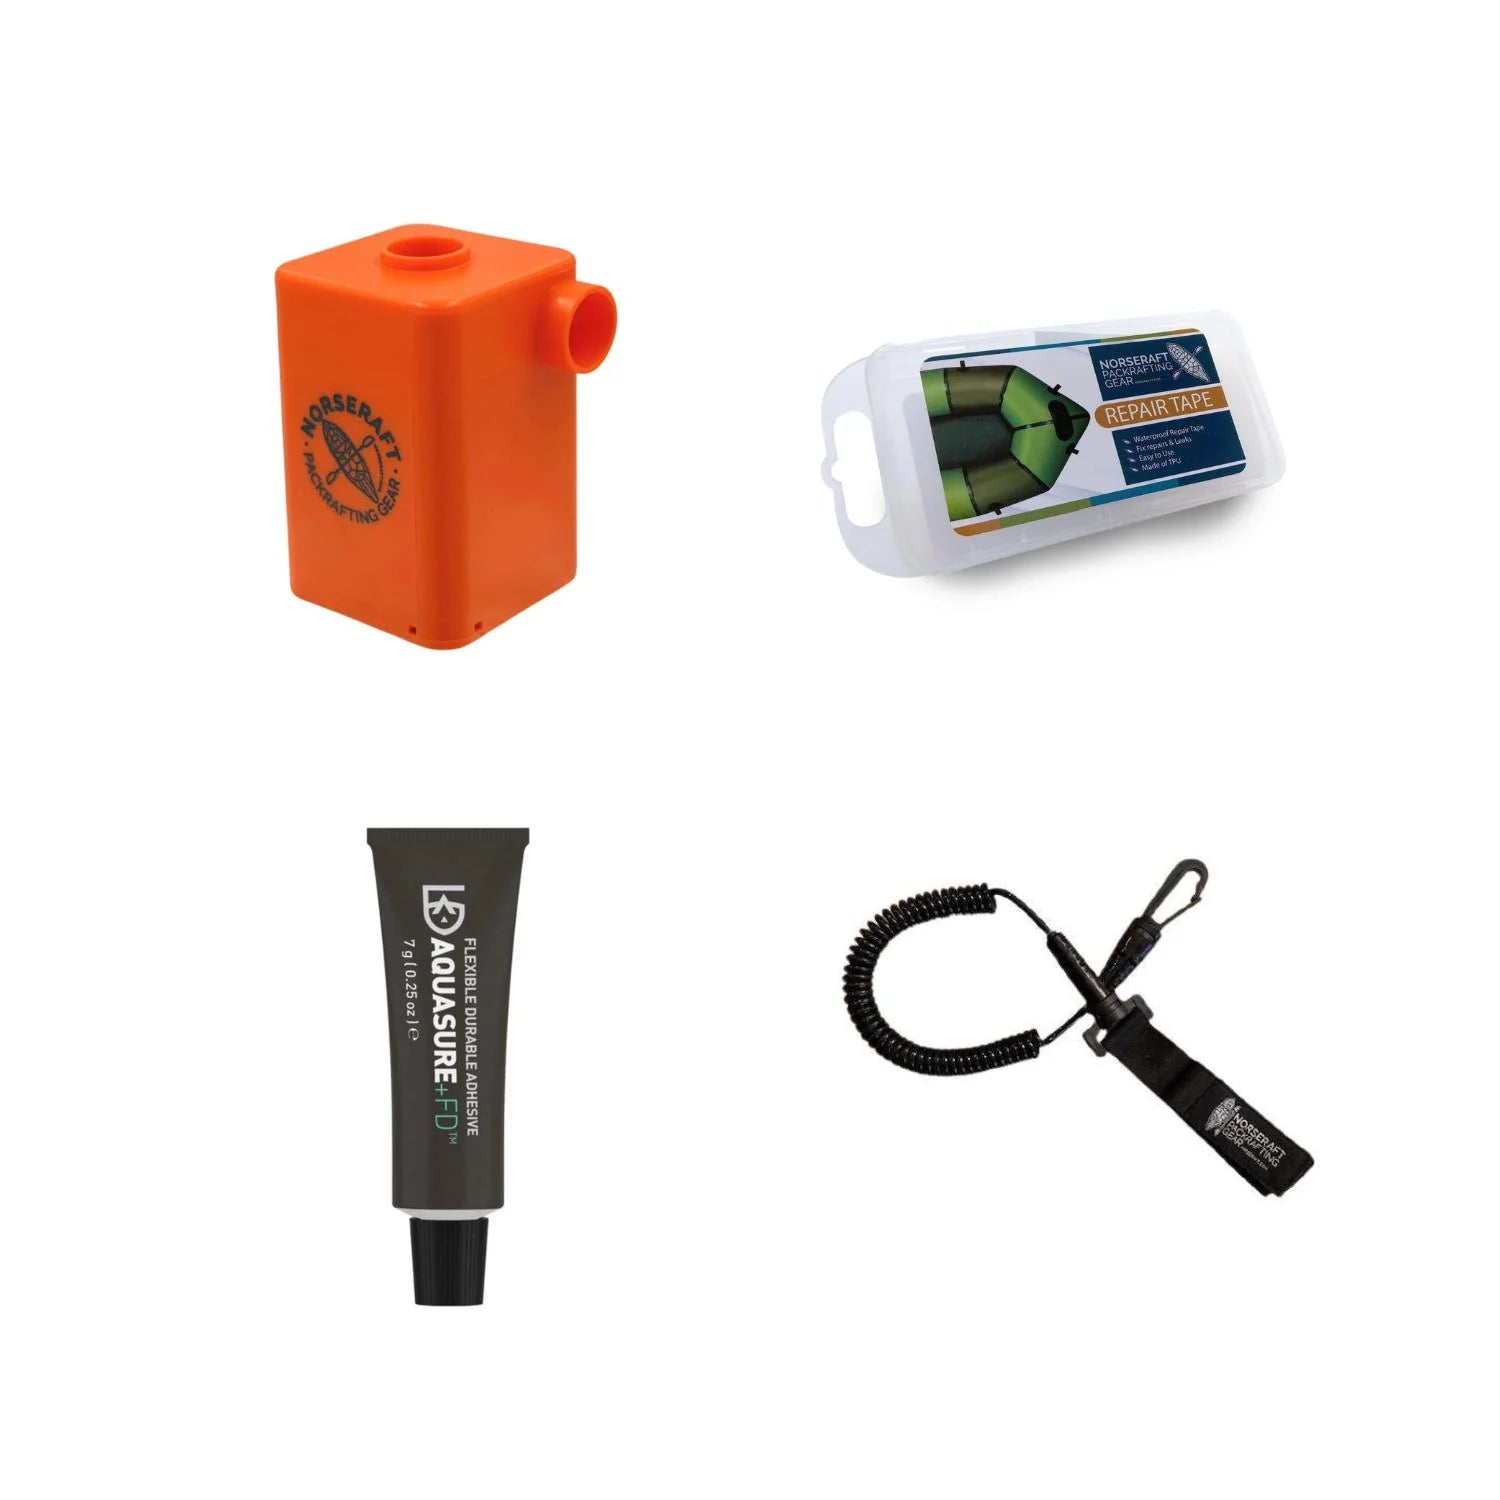 Paketdeal: Fenrir Pump + Paddle Leash + Aquasure + Field Repair Kit